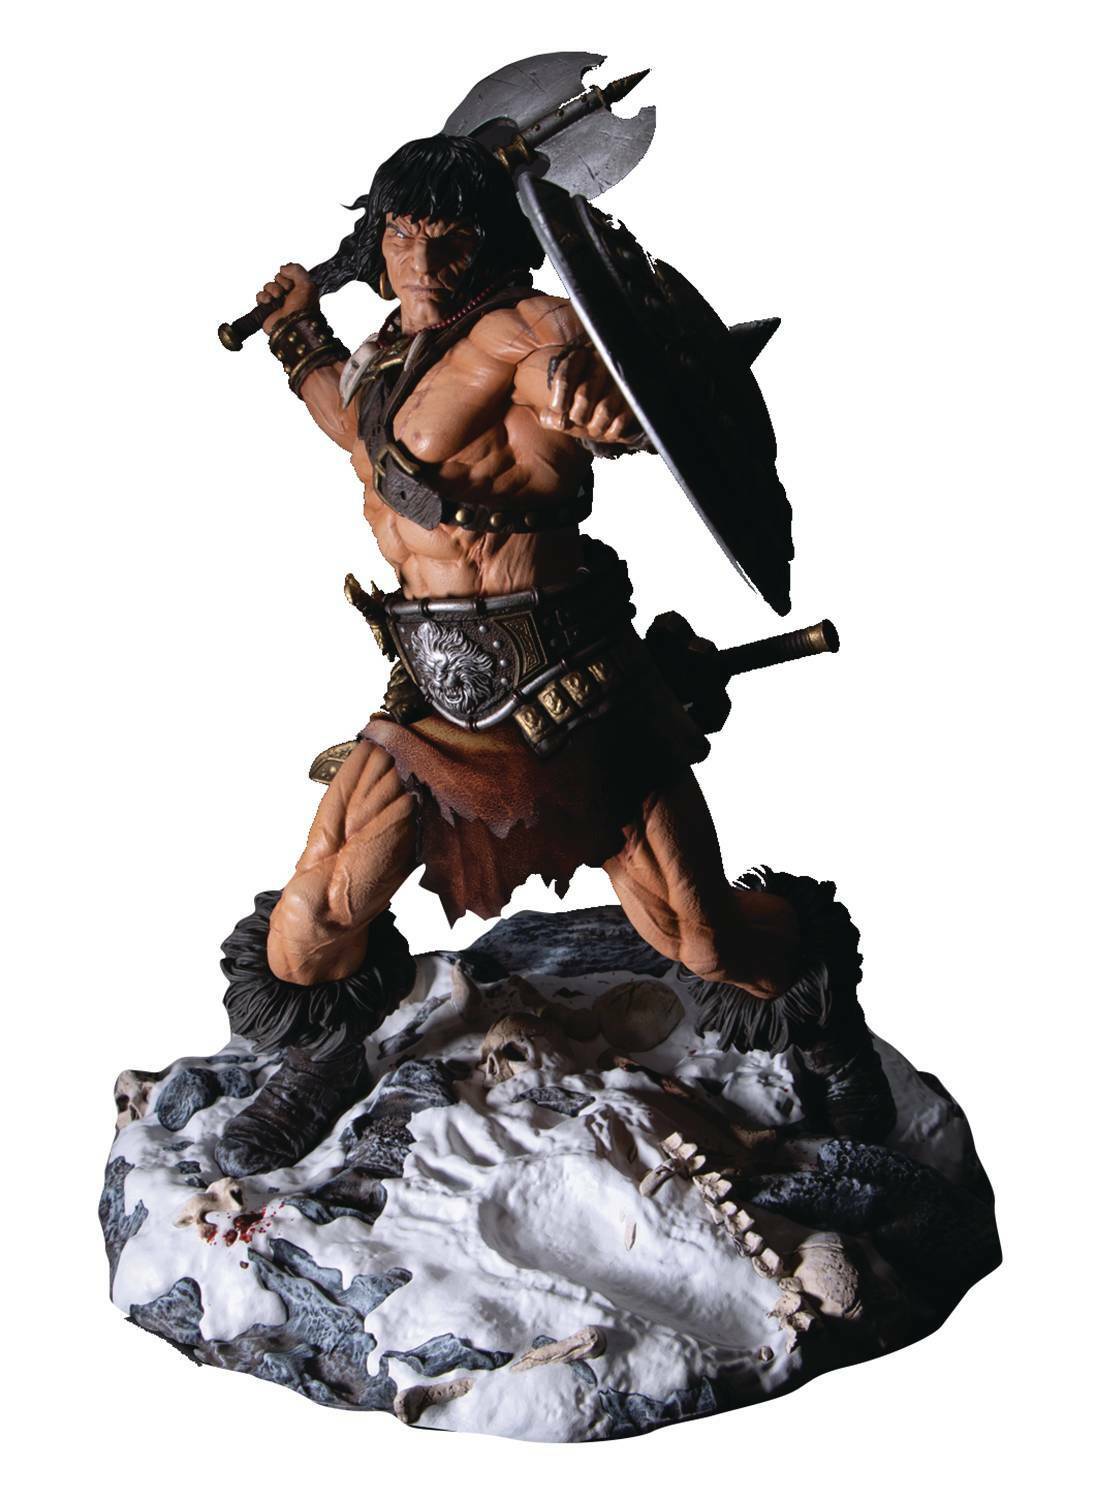 Static-6 Six Conan The Cimmerian Barbarian 1/6 Scale Statue Figure by Mezco Toyz